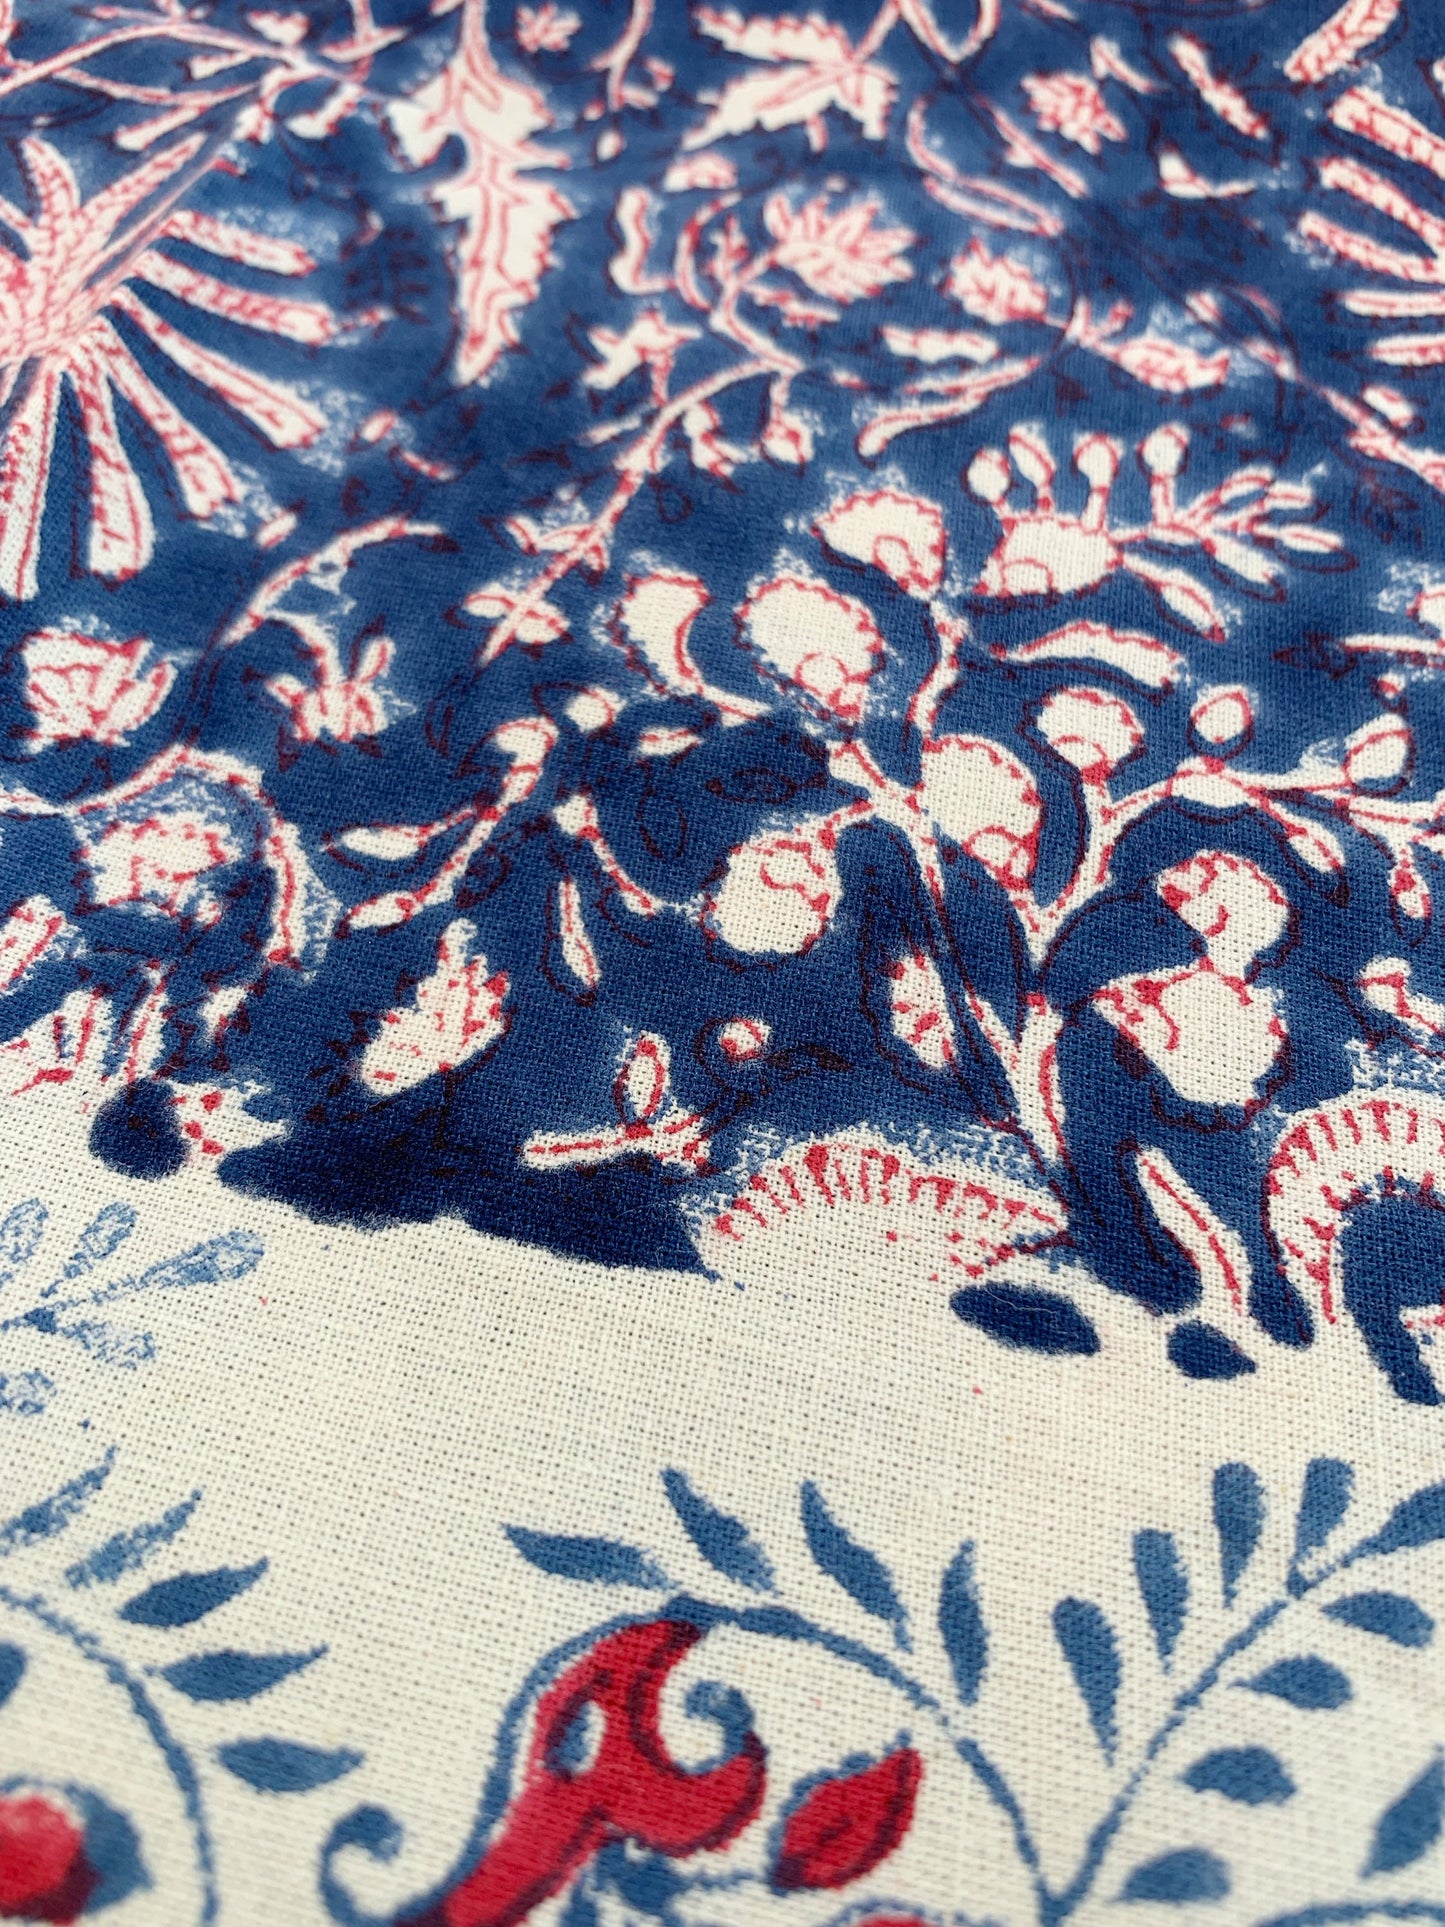 Mantel algodón puro estampado block print artesanal en India · Seis comensales · Mantel boho chic 100% algodón hindú · Azul  flor rojo